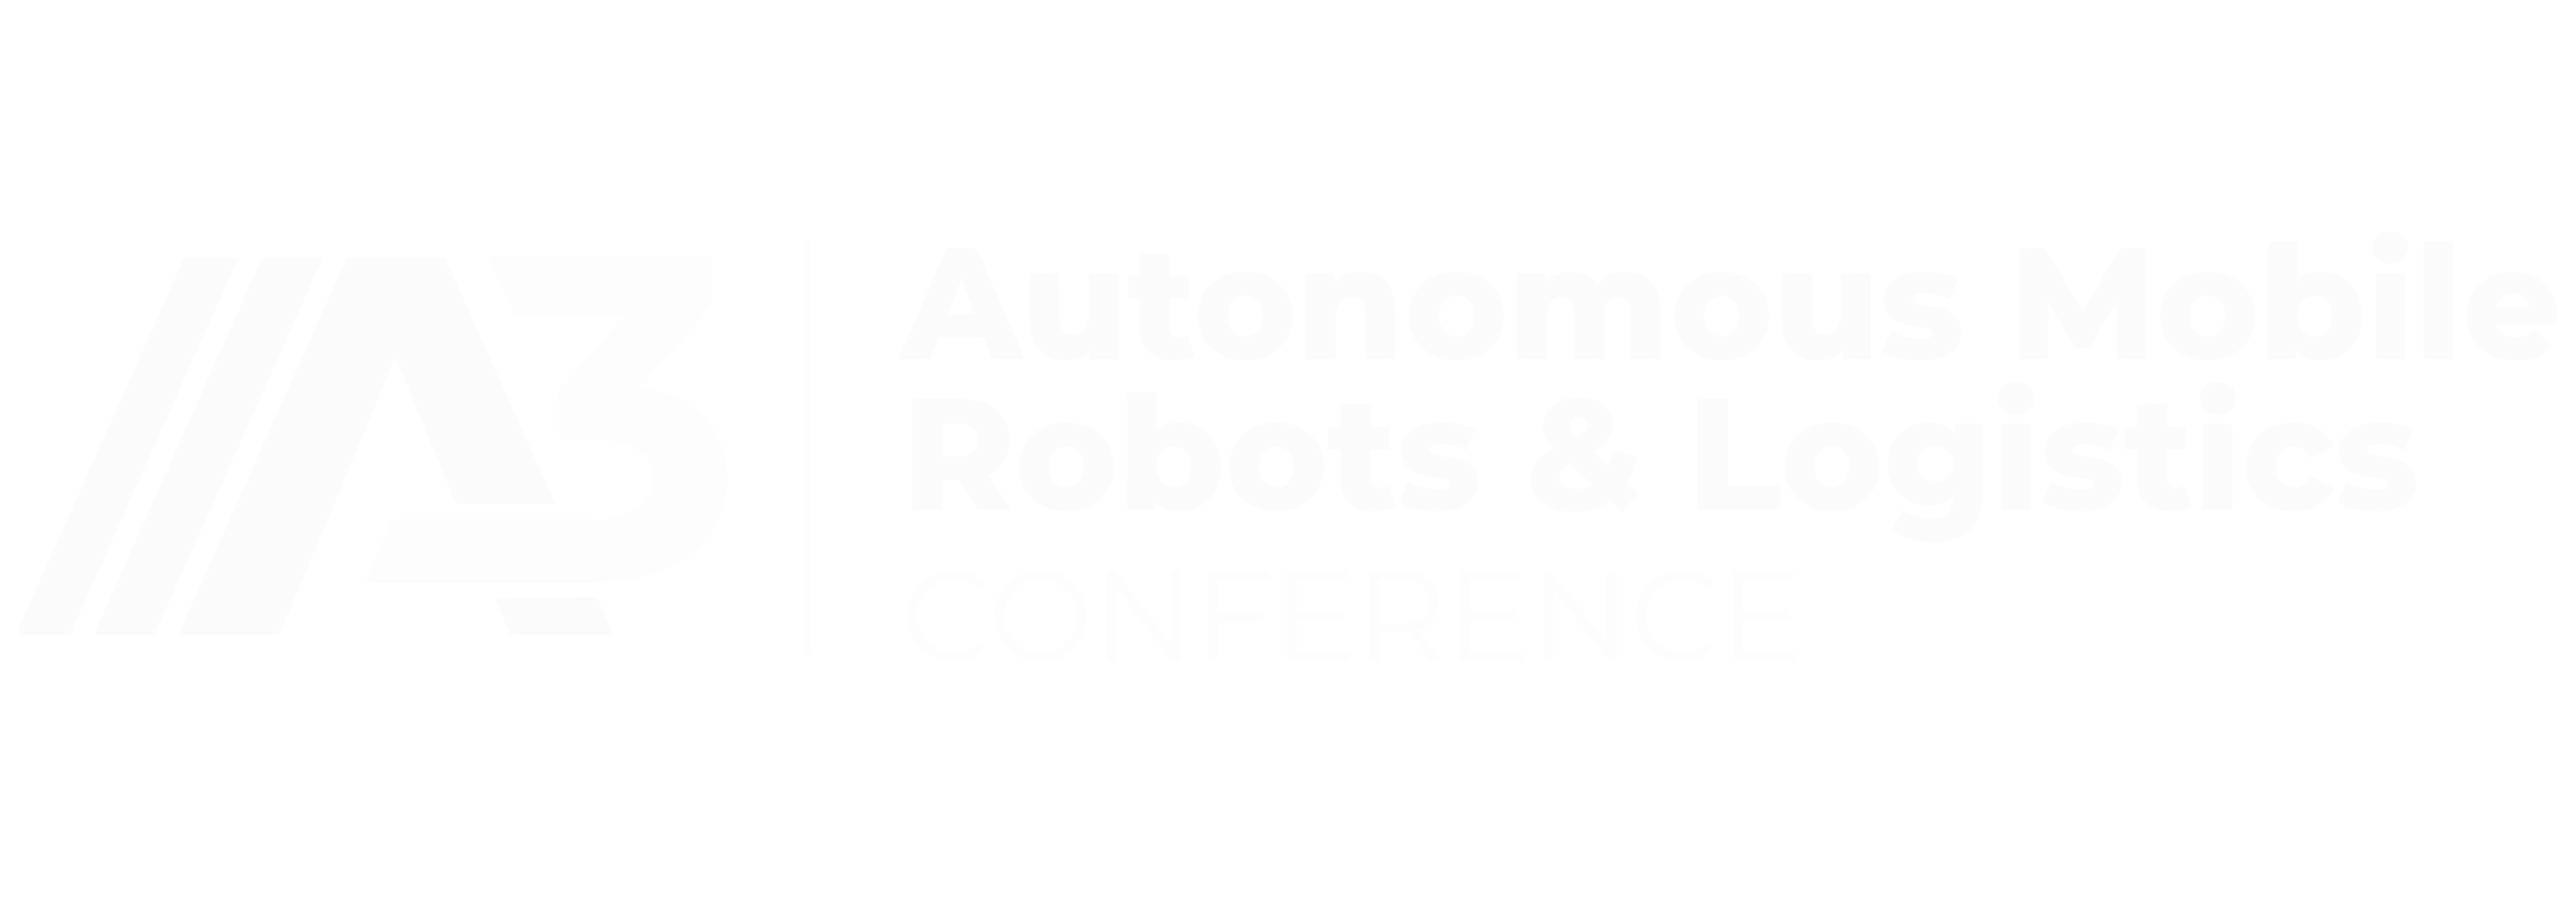 Autonomous Mobile Robots Conference 2021 Logo